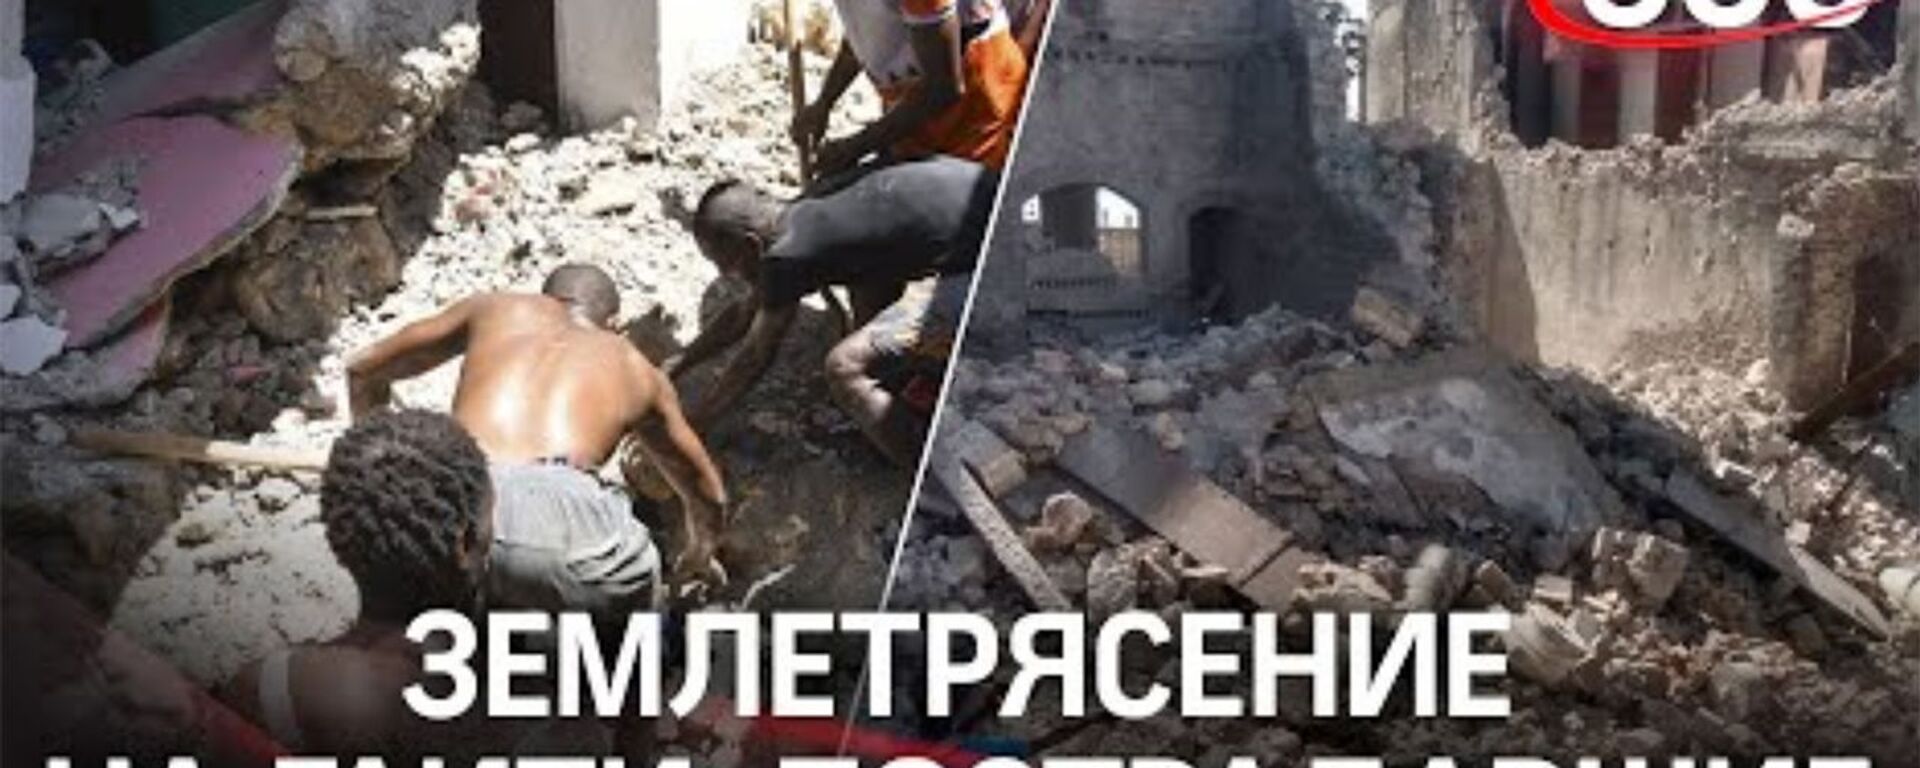 Ждут спасения под завалами: жуткие кадры с жертвами землетрясения на Гаити - Sputnik Армения, 1920, 15.08.2021